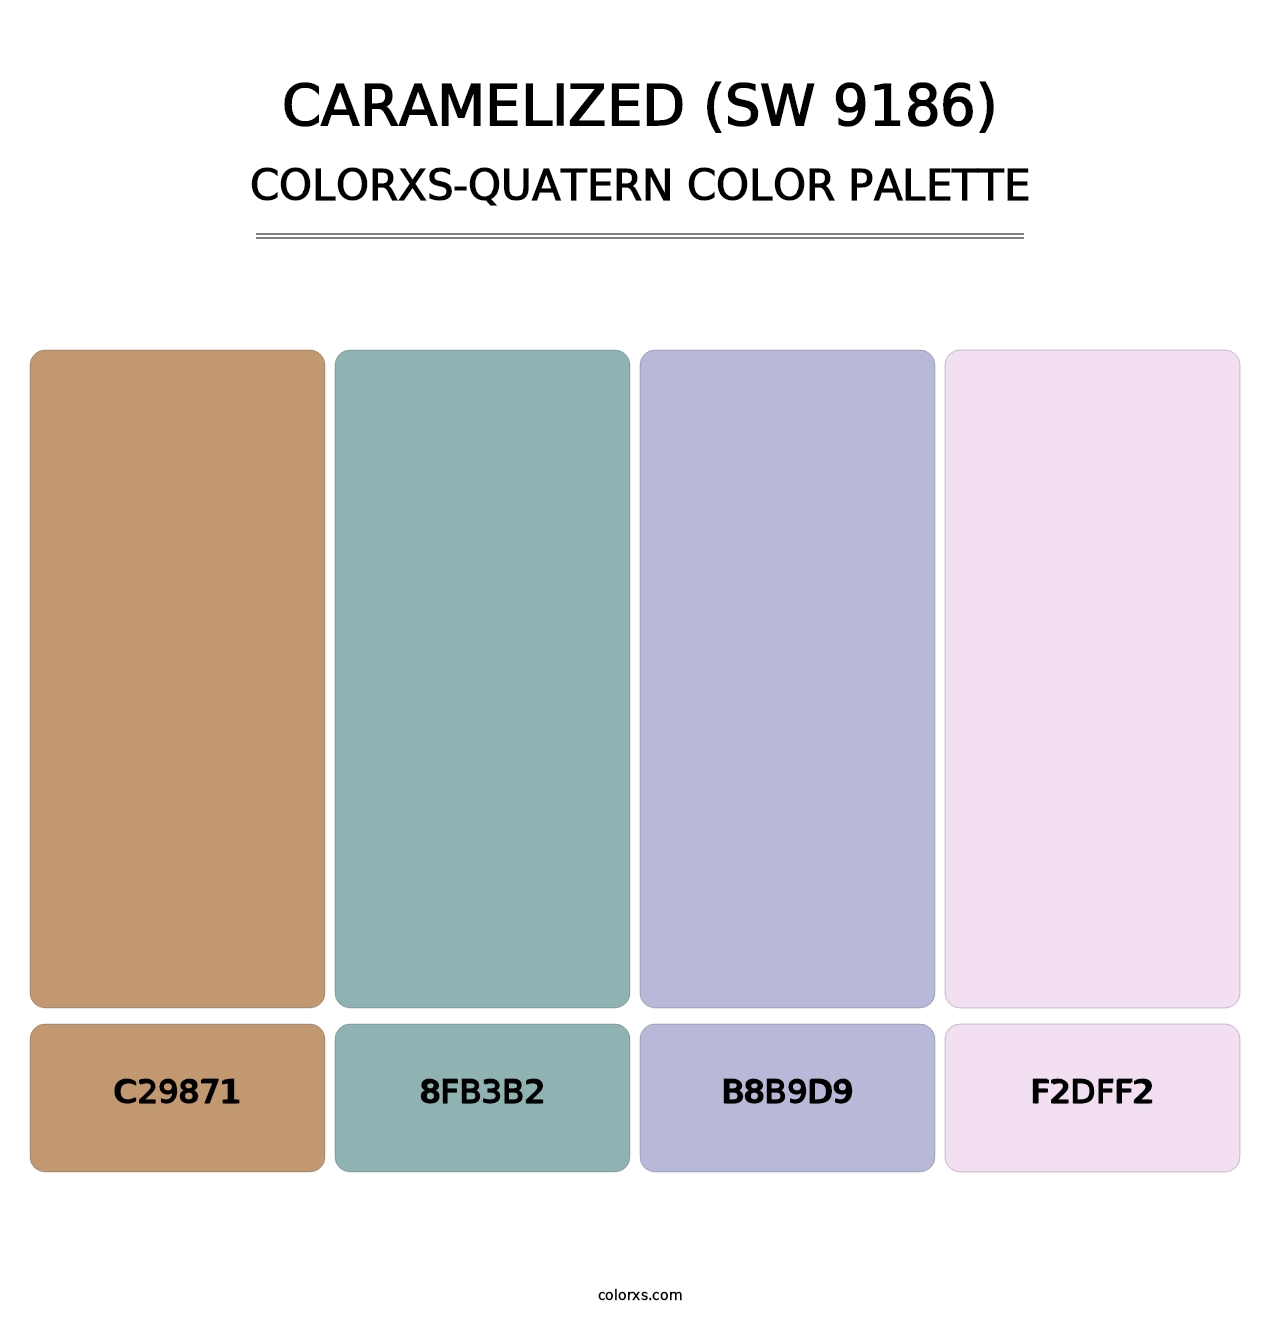 Caramelized (SW 9186) - Colorxs Quatern Palette